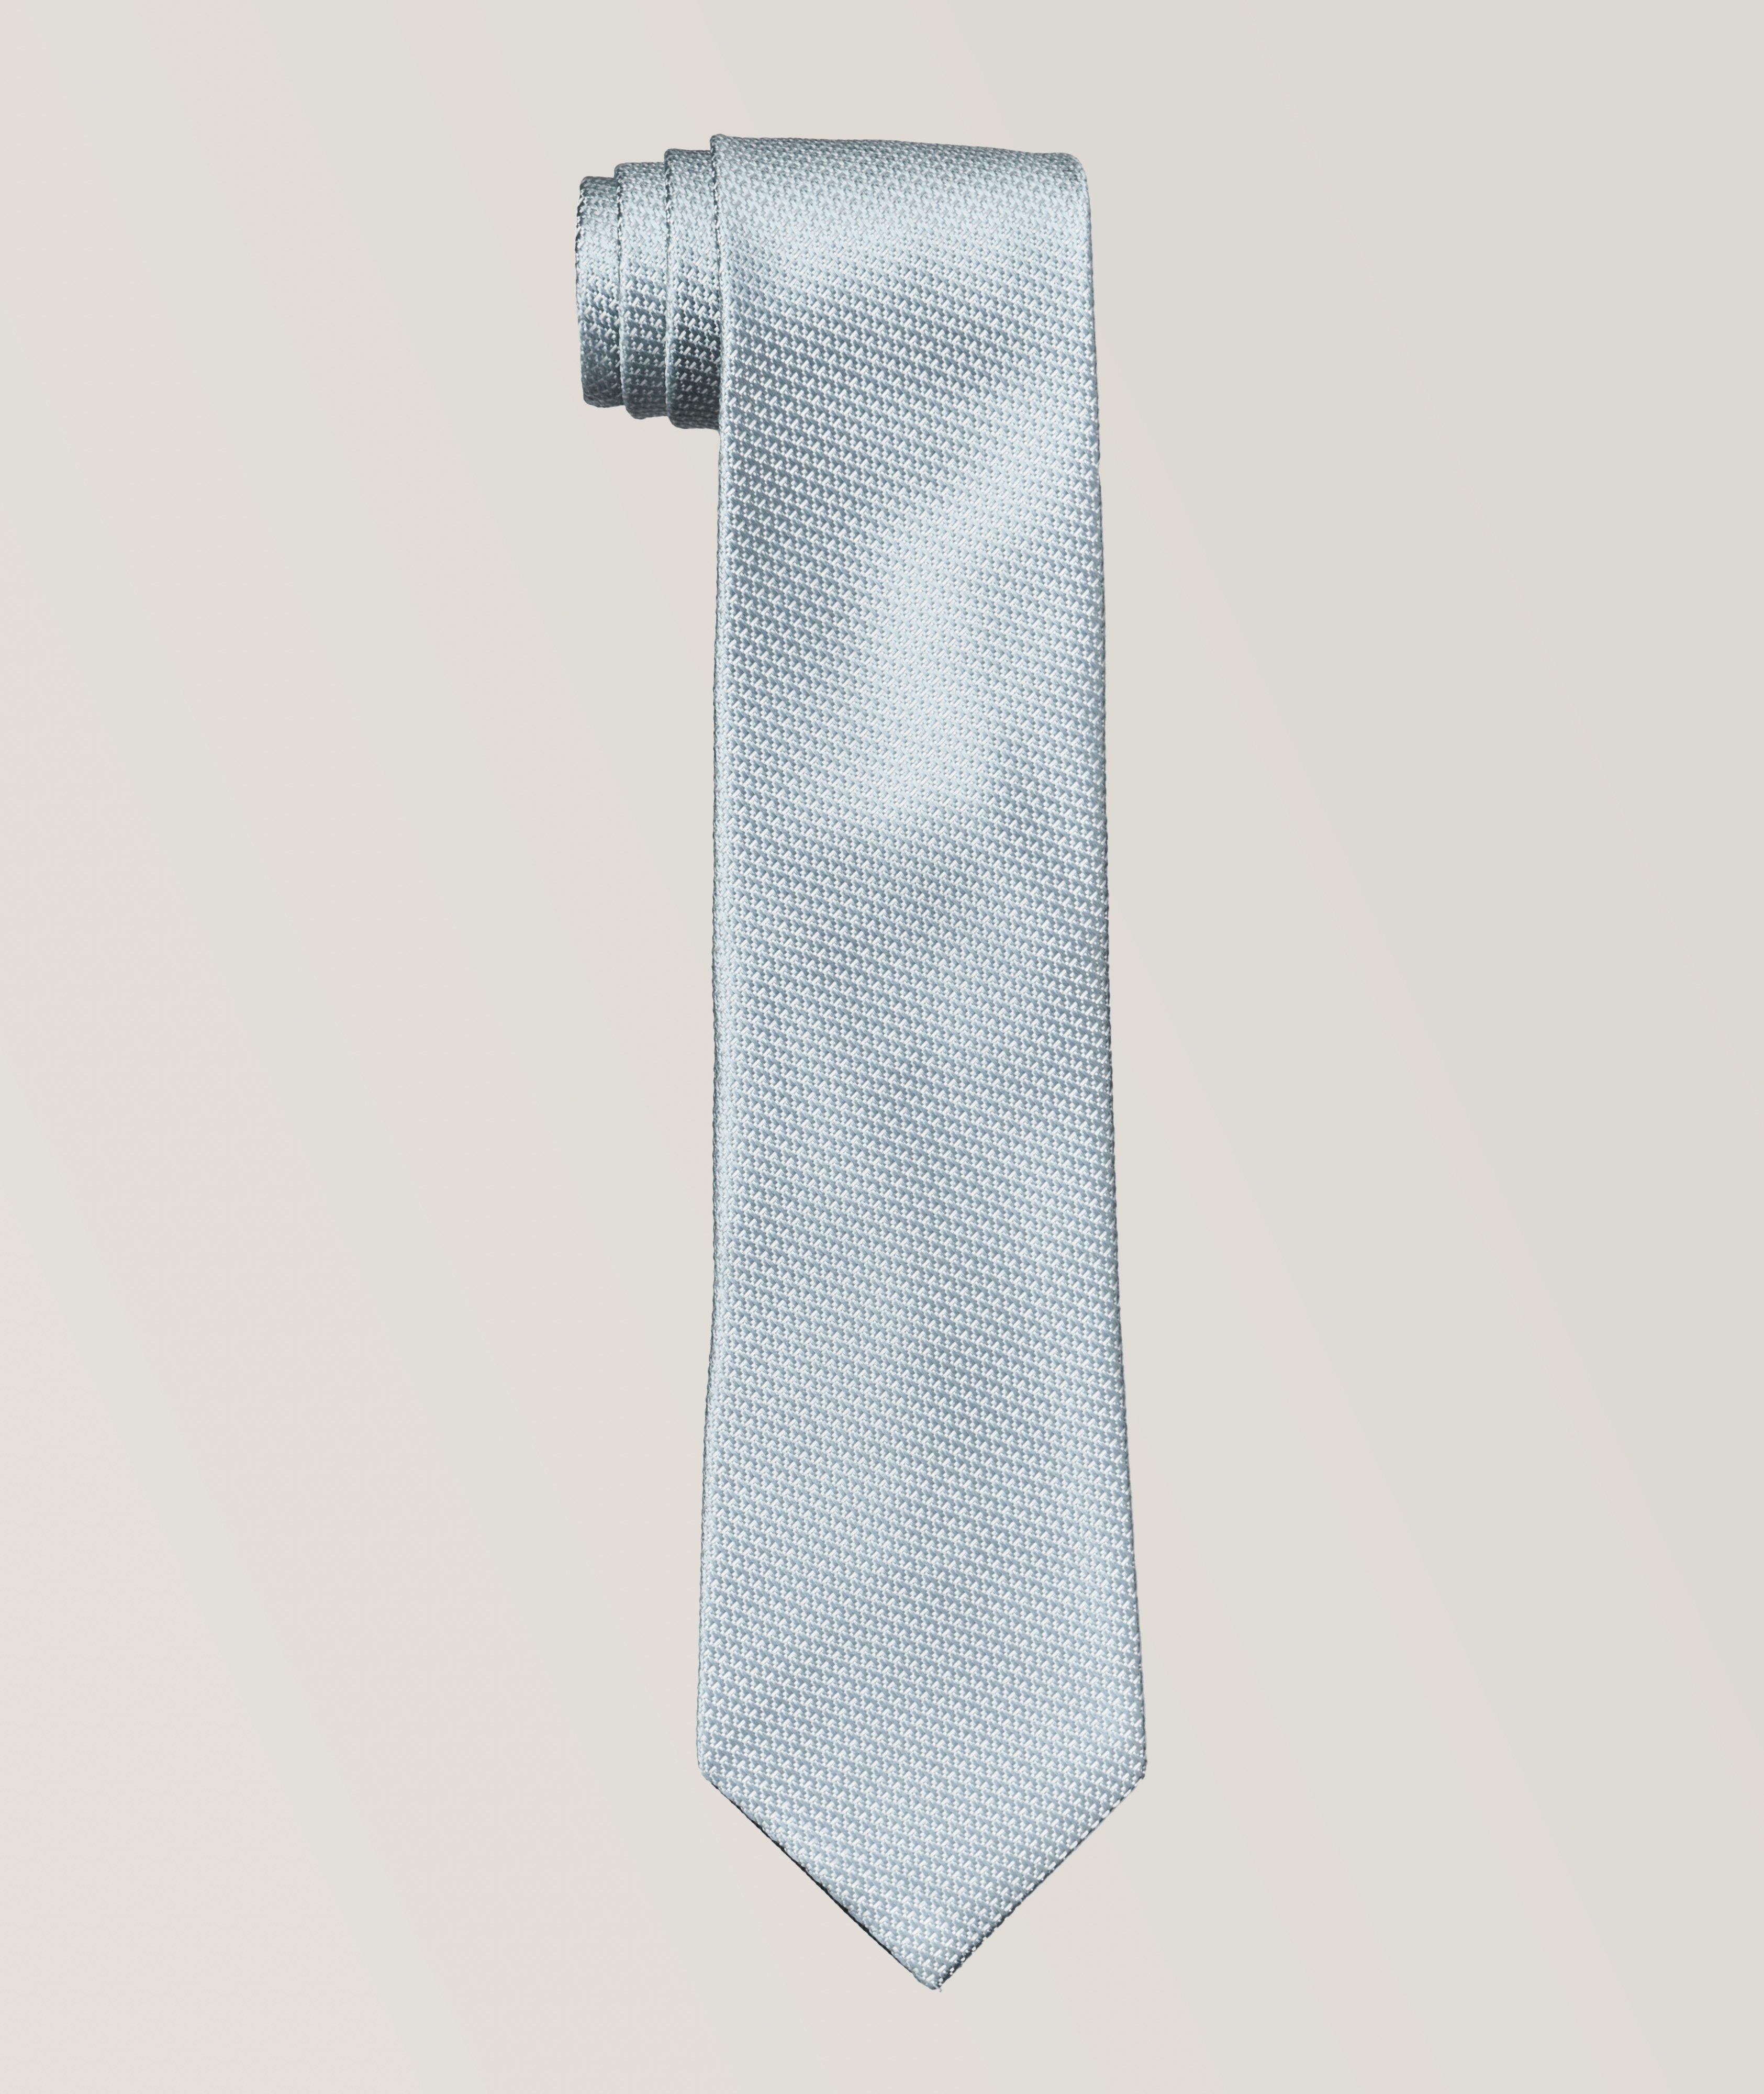 Cravate en soie à motif croisé image 0